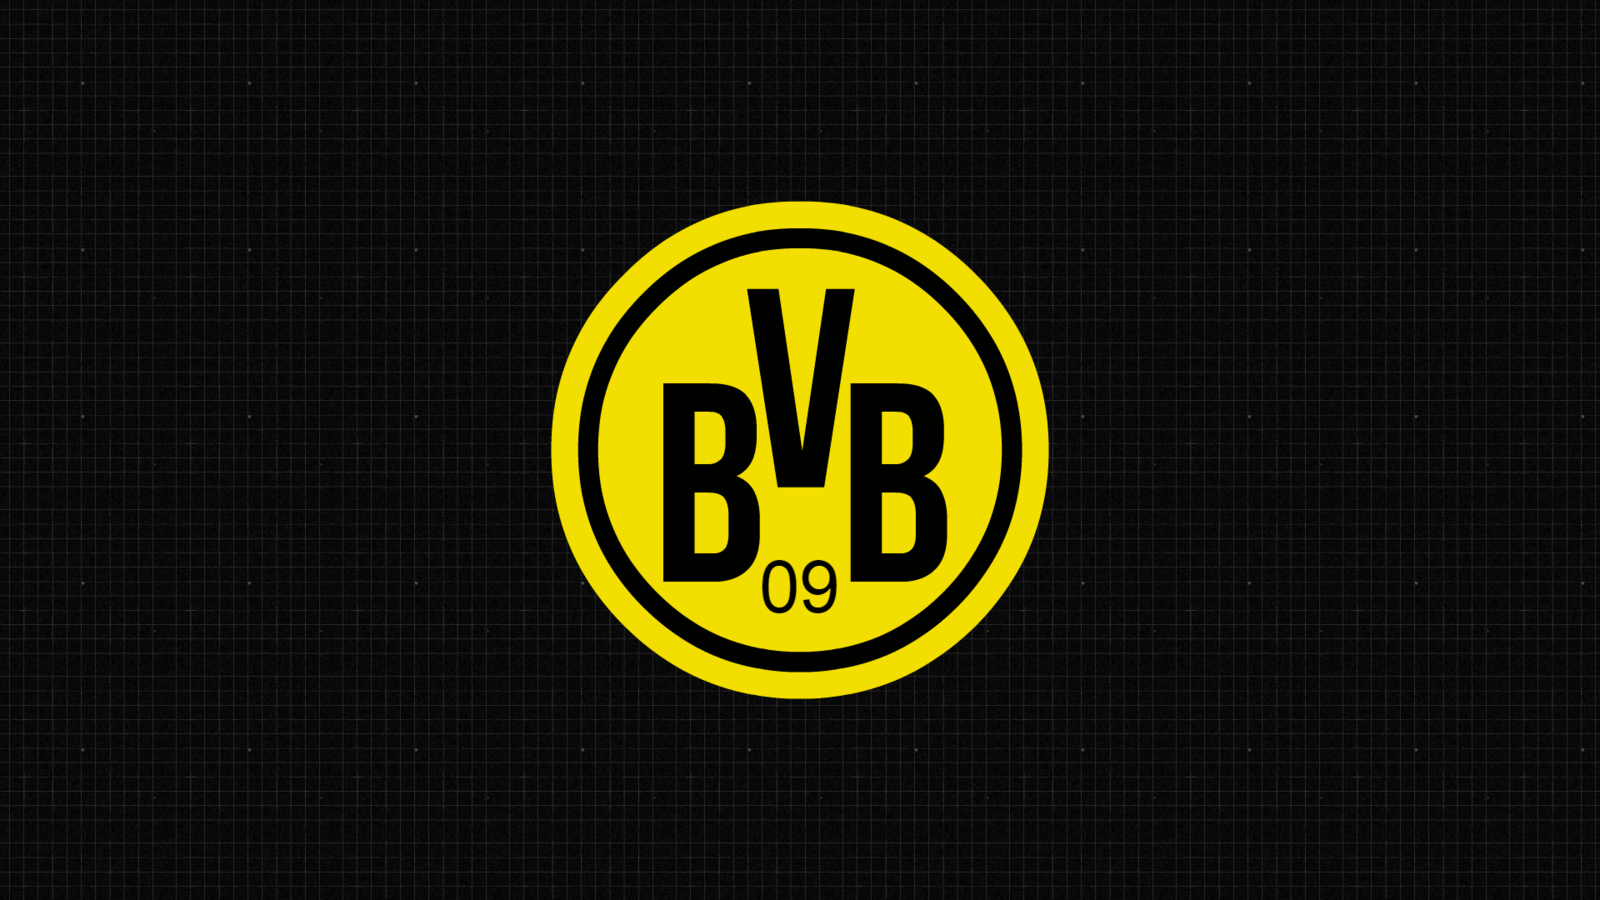 Borussia Dortmund Wallpaper 1366x768. wallpaper blink show jumping